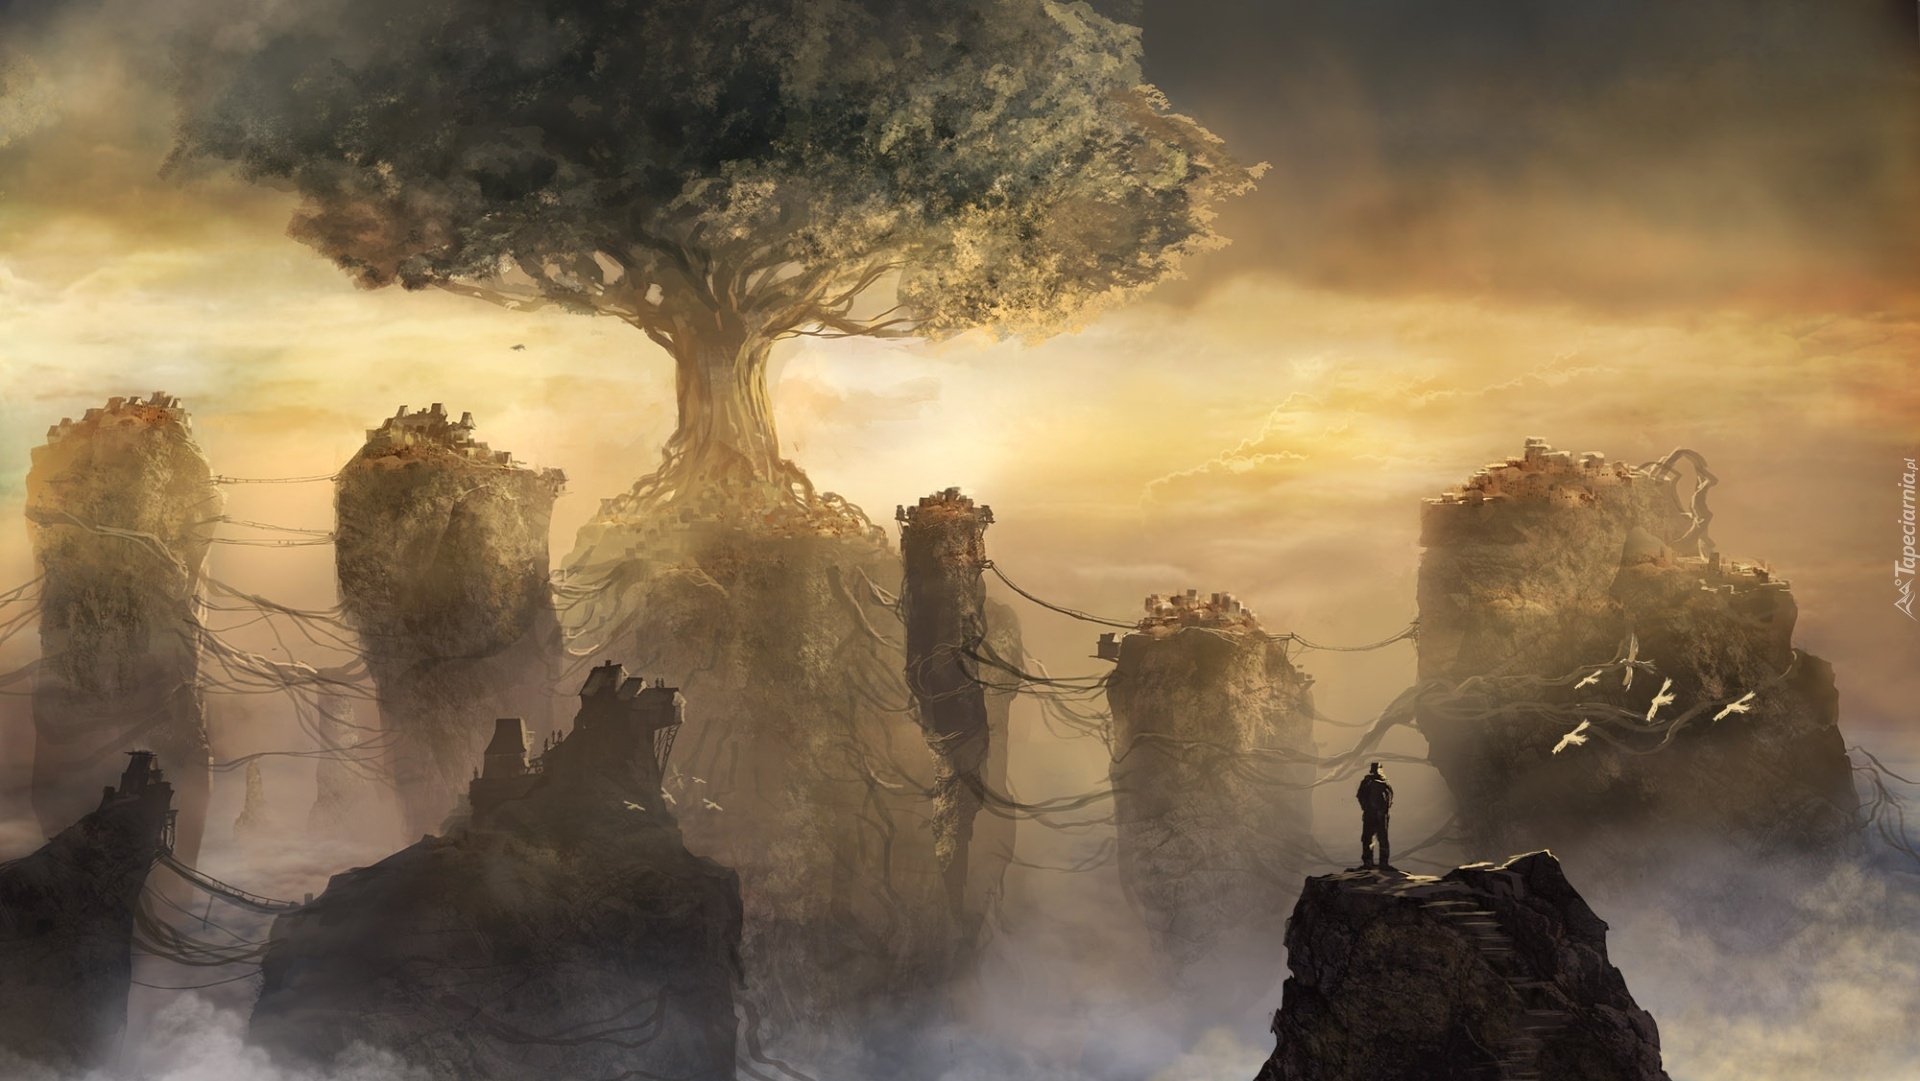 Drzewo, Skały, Mgła, Człowiek, Fantasy